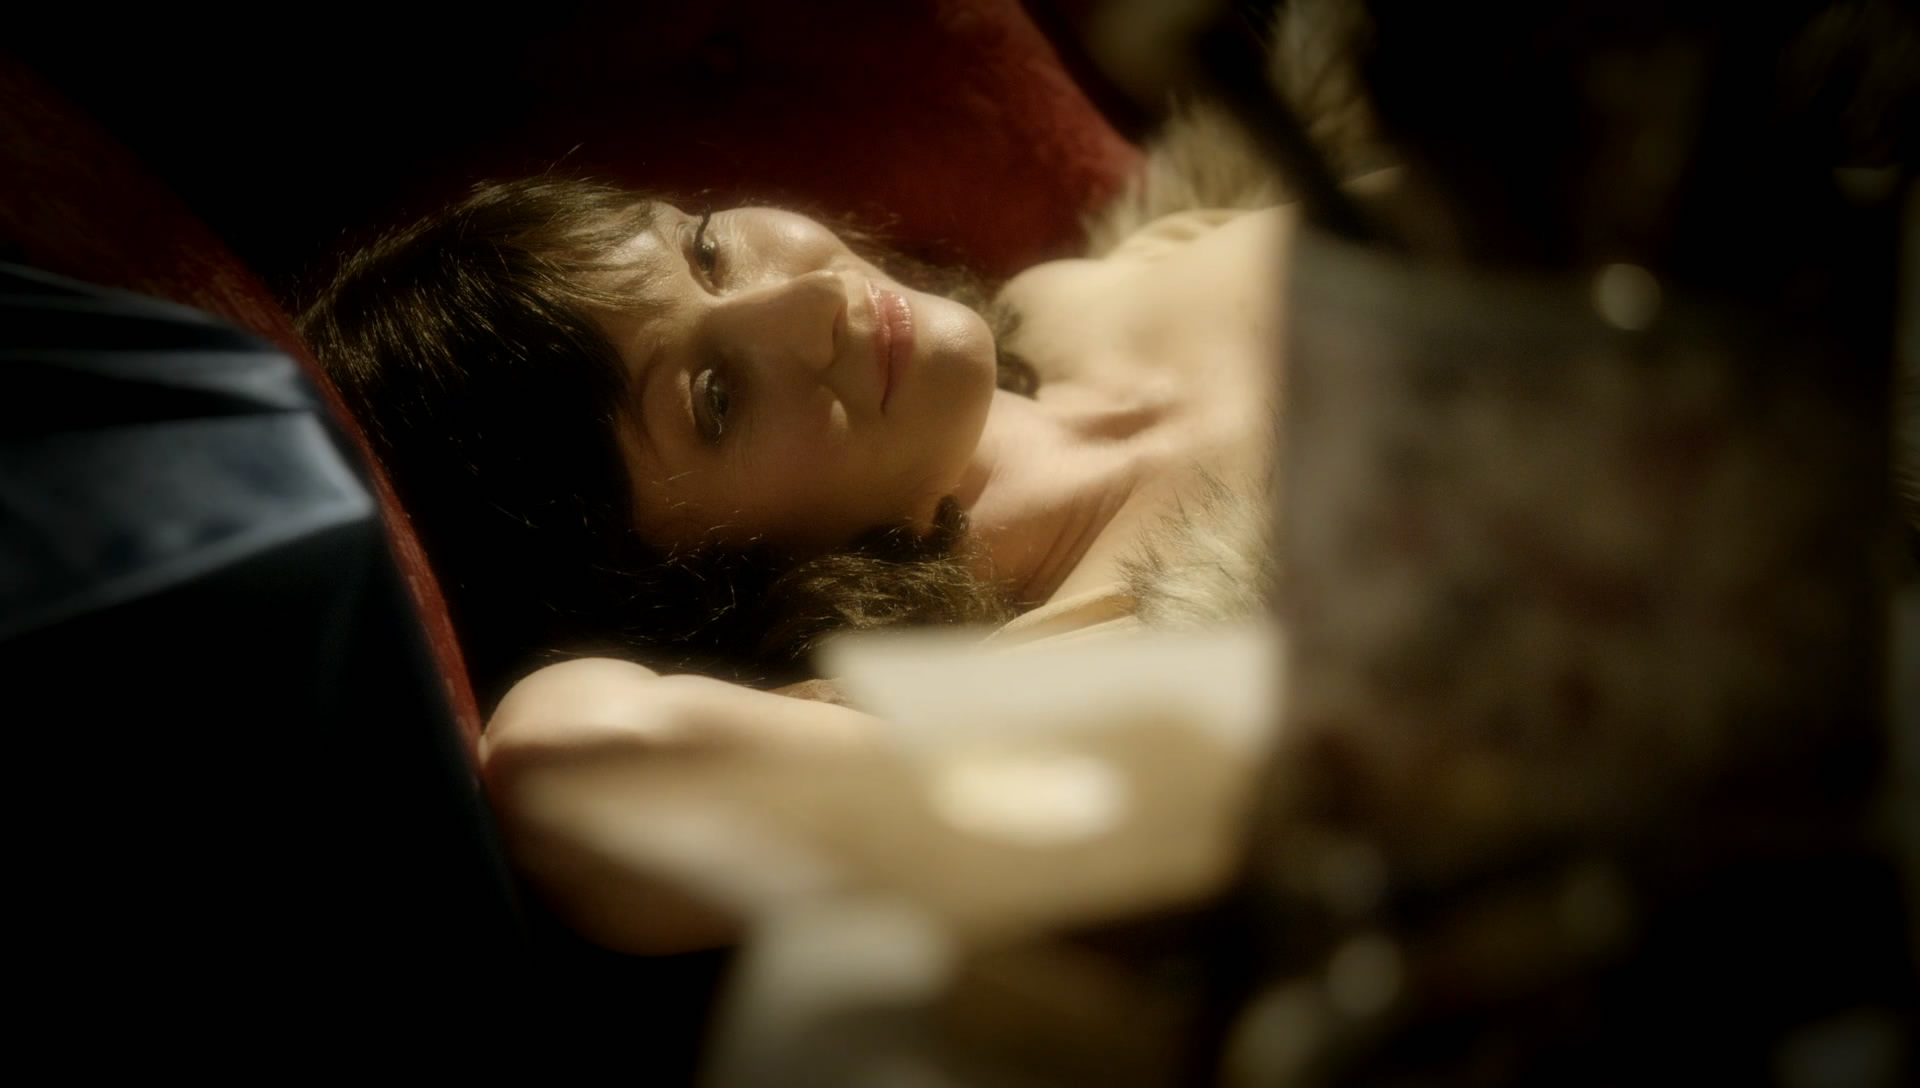 Essie davis naked - 🧡 Essie Davis Nude, The Fappening - Photo #182485...